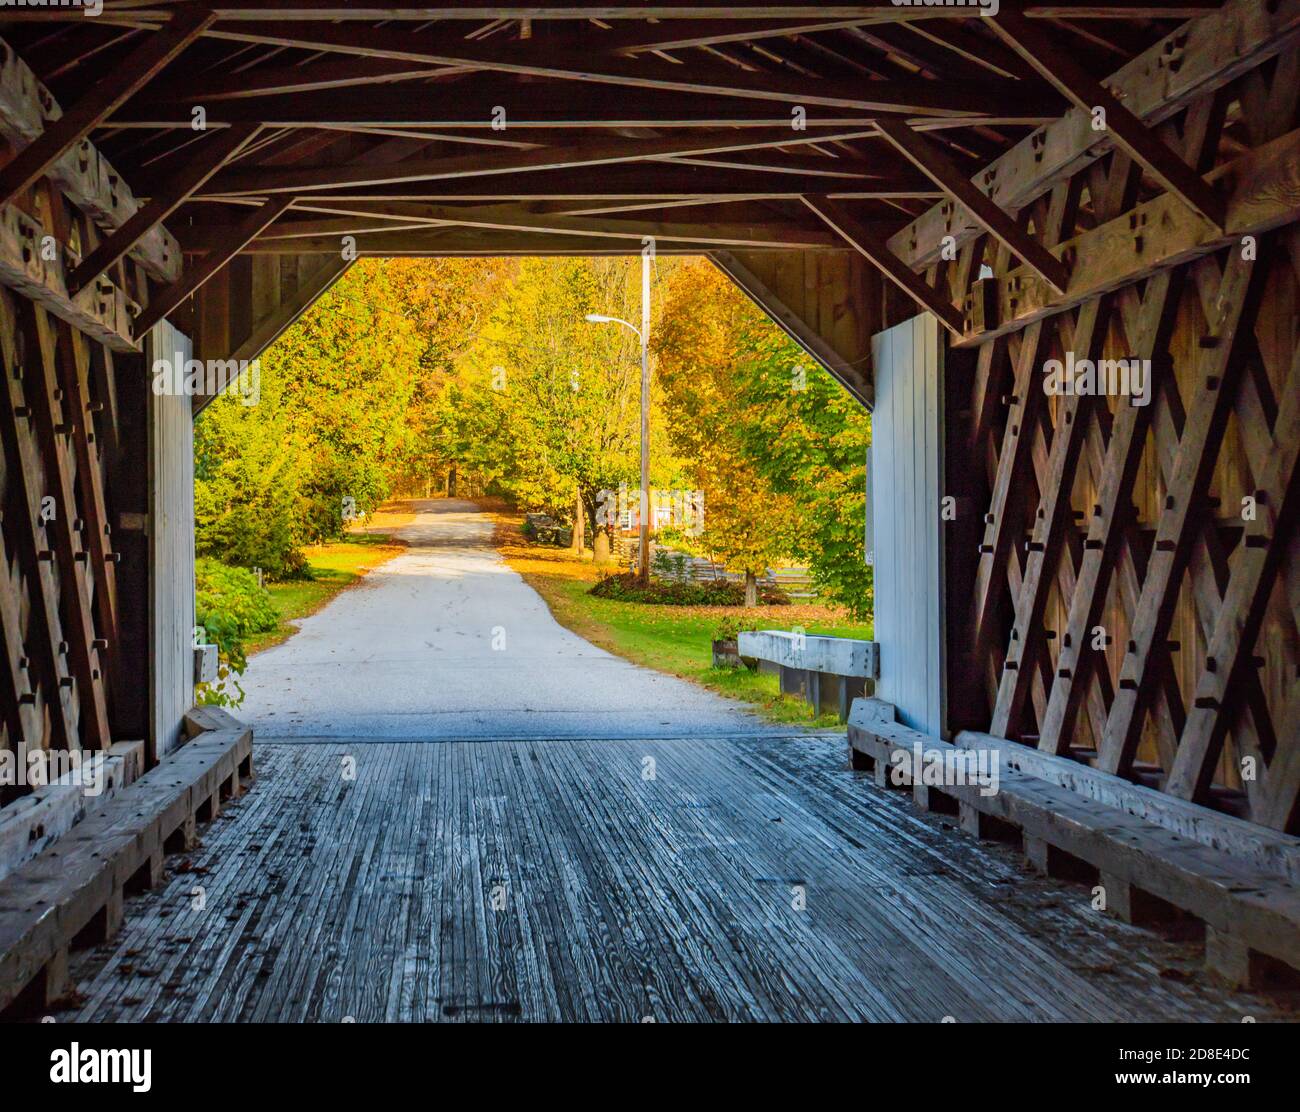 Vue de l'intérieur du pont couvert historique de Comstock sur la route couverte par le feuillage d'automne, les arbres ont été colorés Banque D'Images